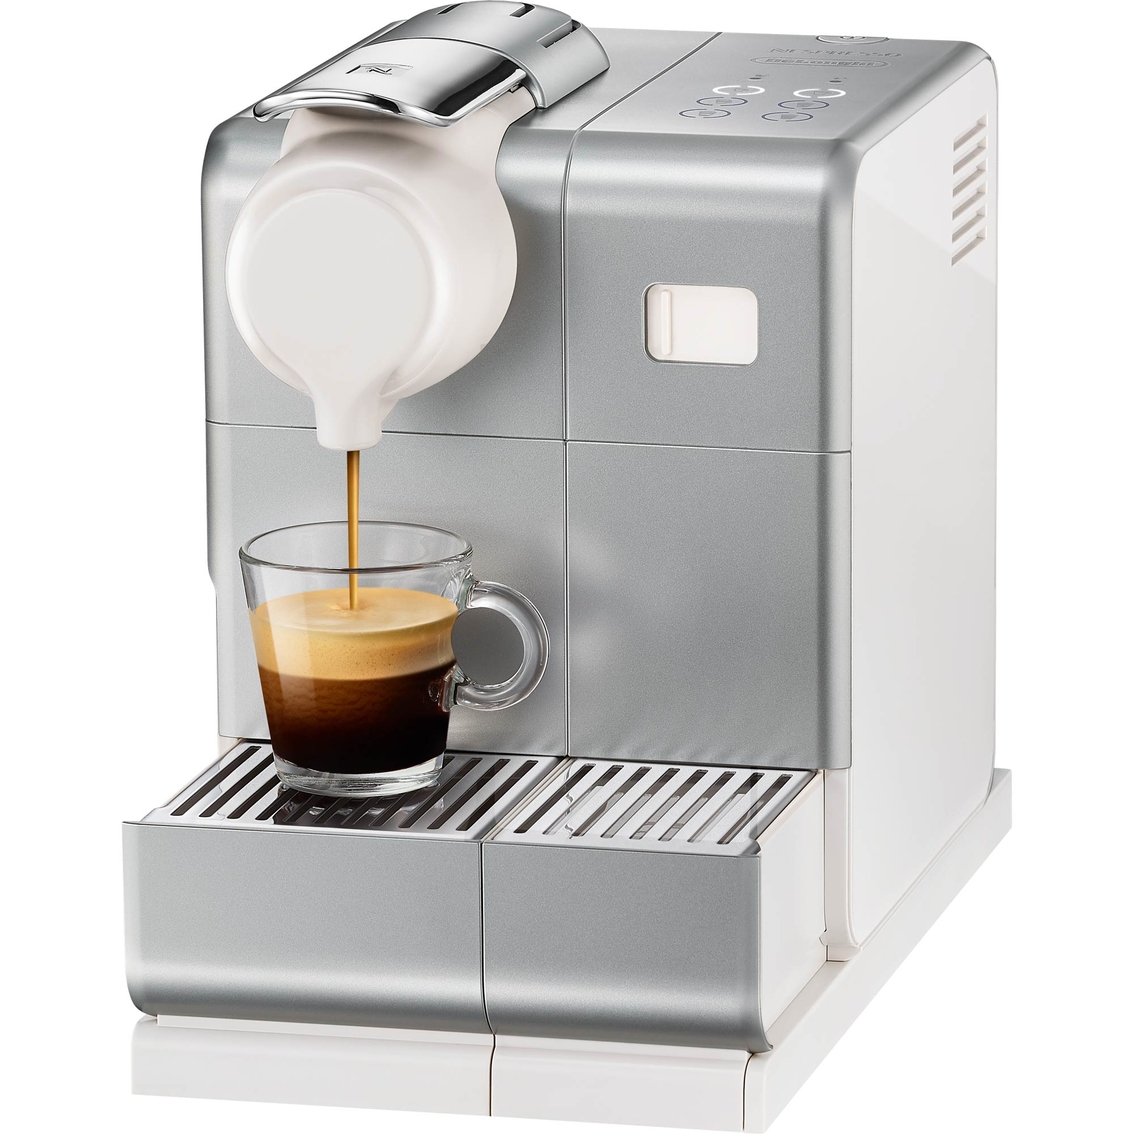 Nespresso New Lattissima Touch Latte, Cappuccino, Espresso Machine - Image 3 of 4